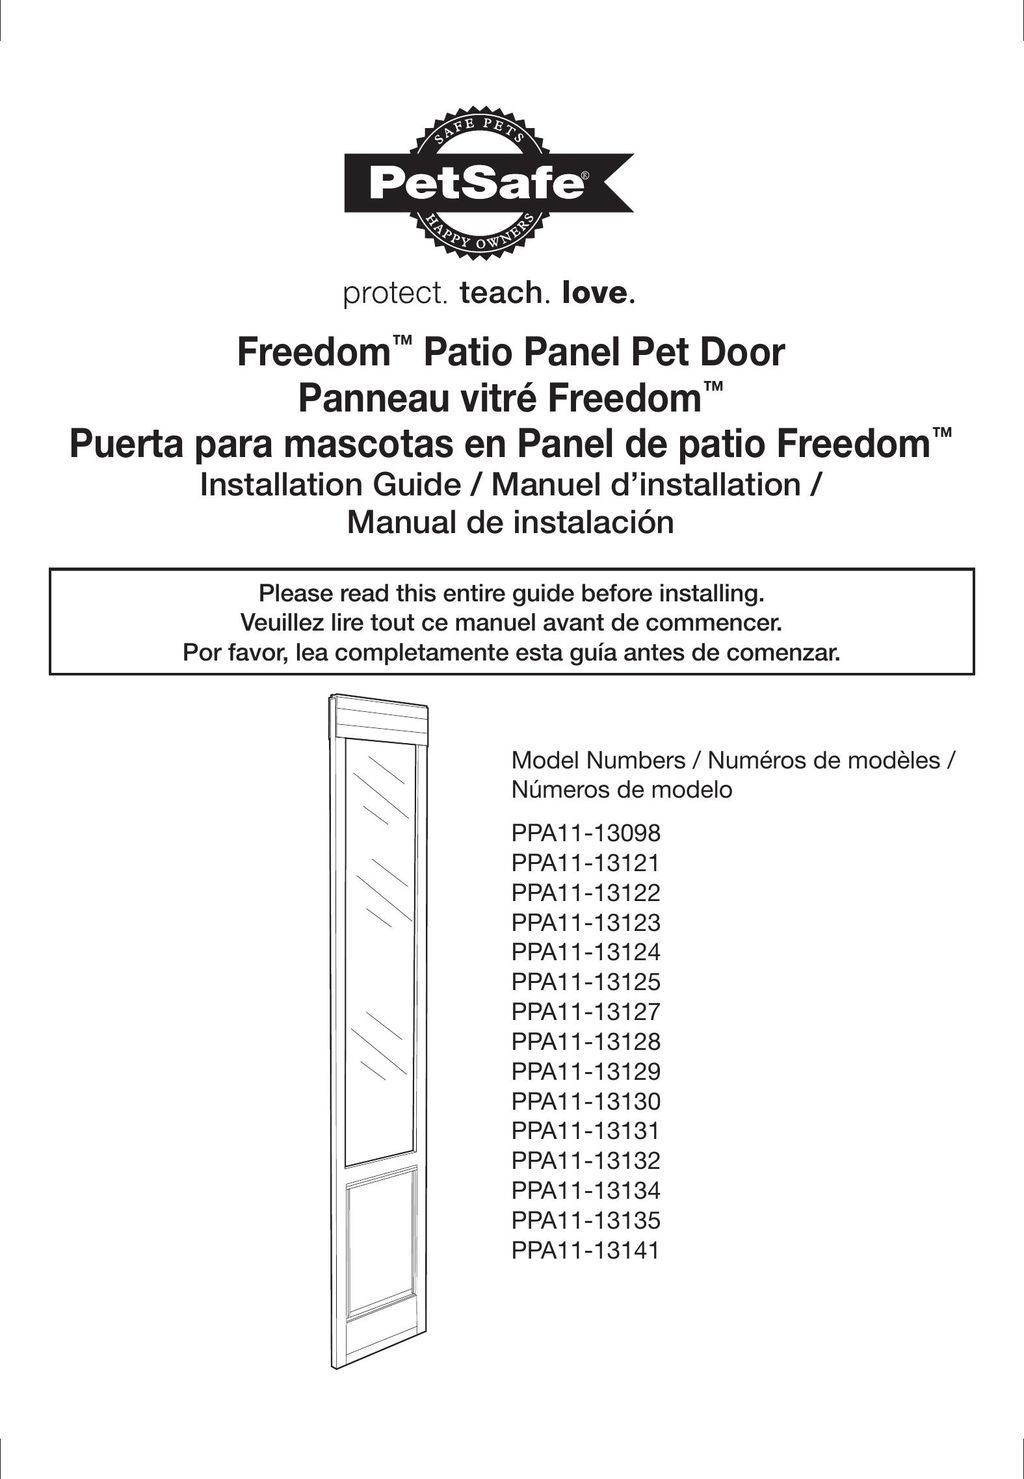 Petsafe PPA11-13131 Door User Manual